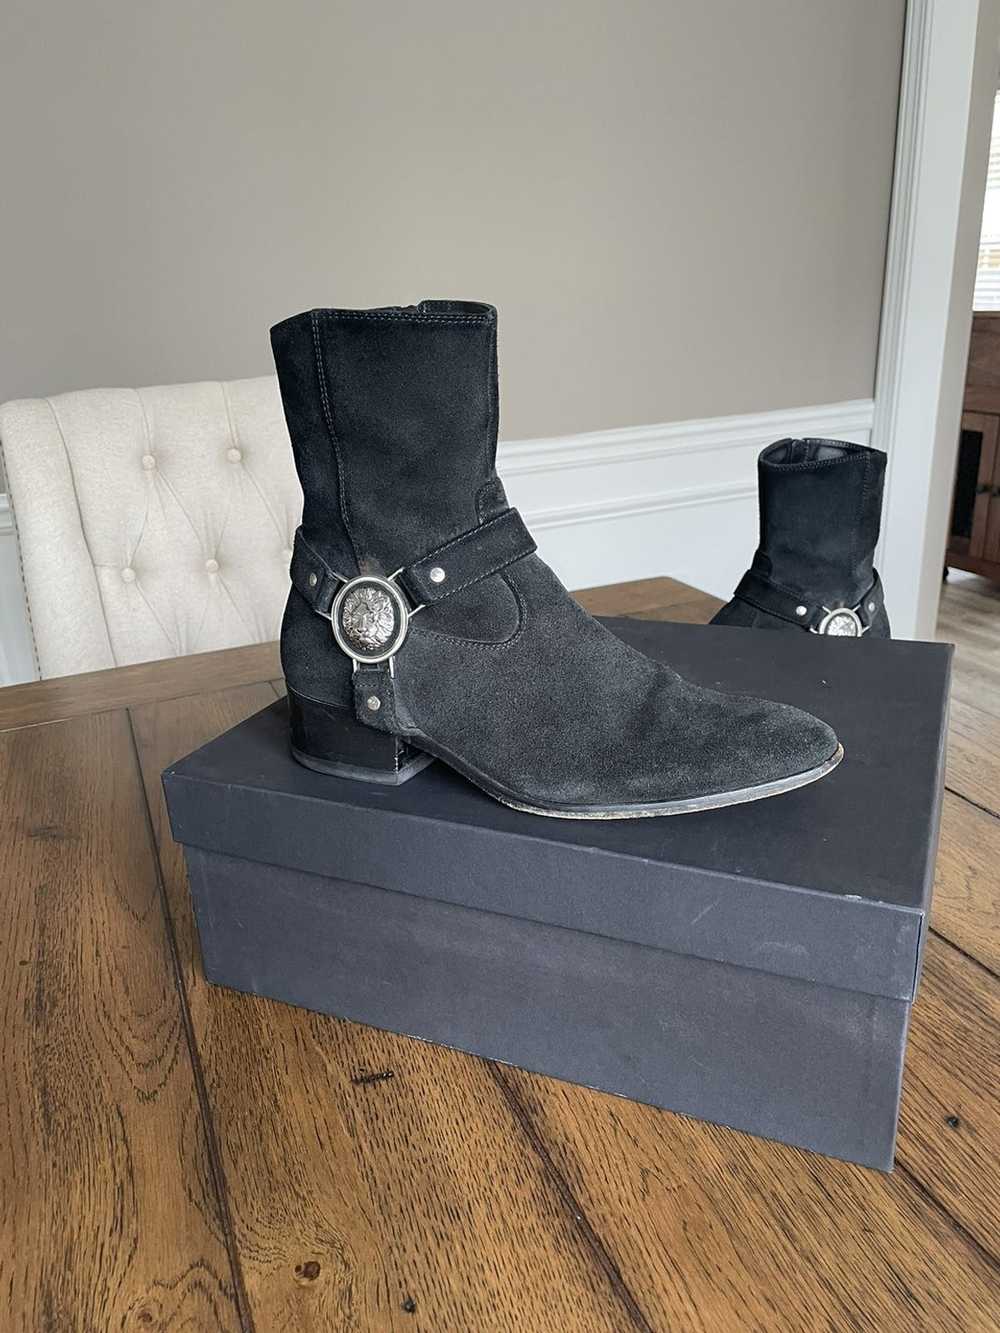 Versus Versace Versus Versace boot (Leather sole) - image 3